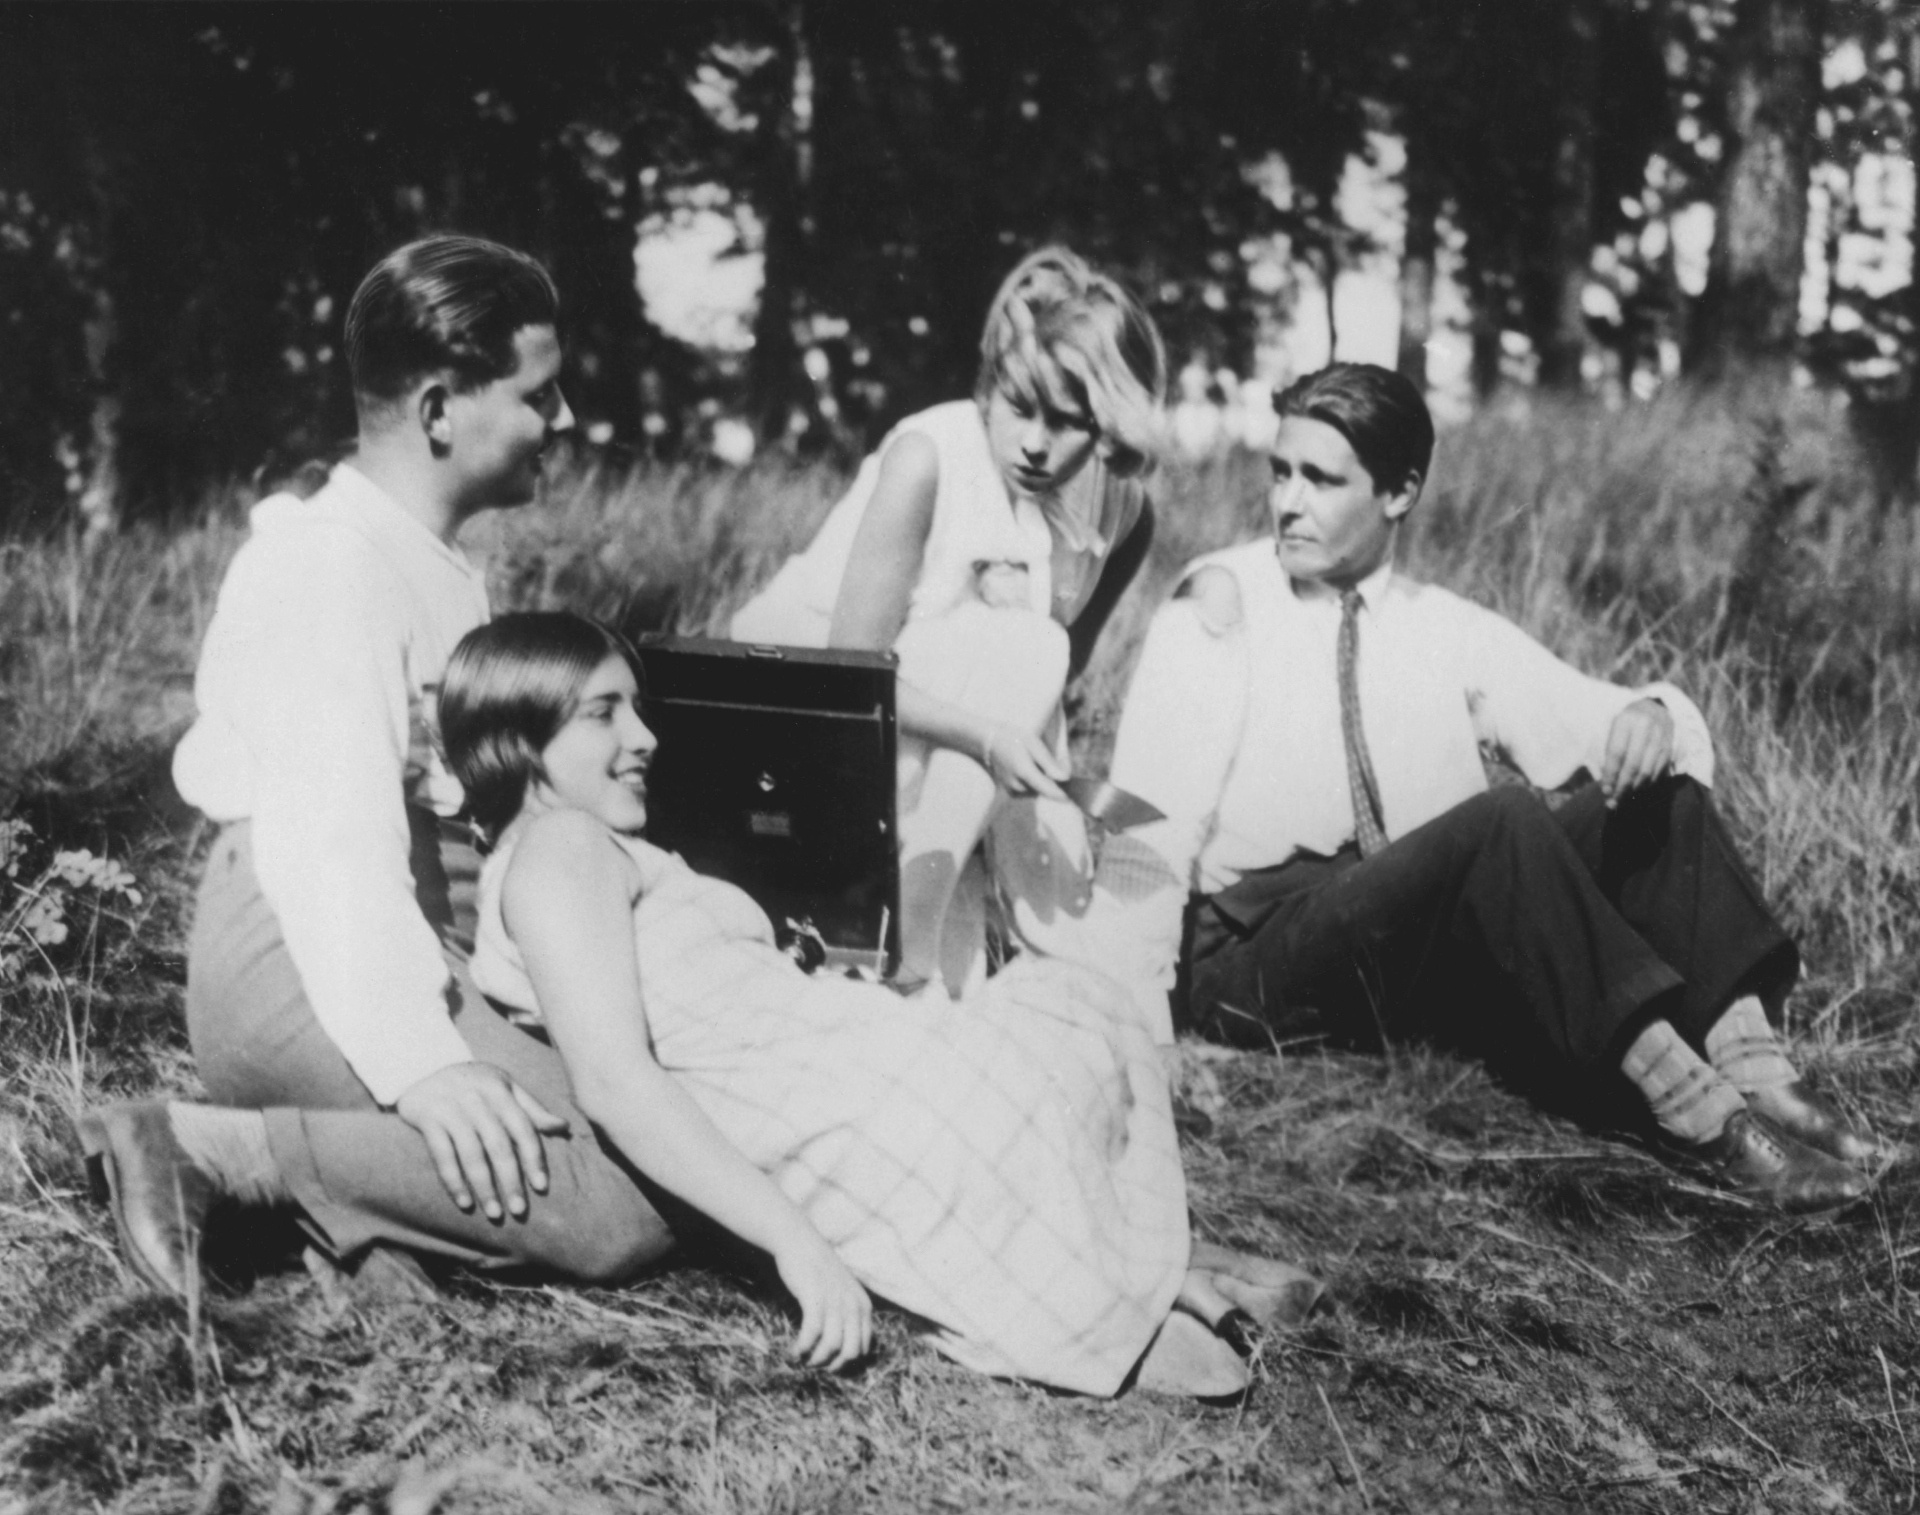 Ausschnitt aus dem Film: vier junge Menschen auf einer Wiese